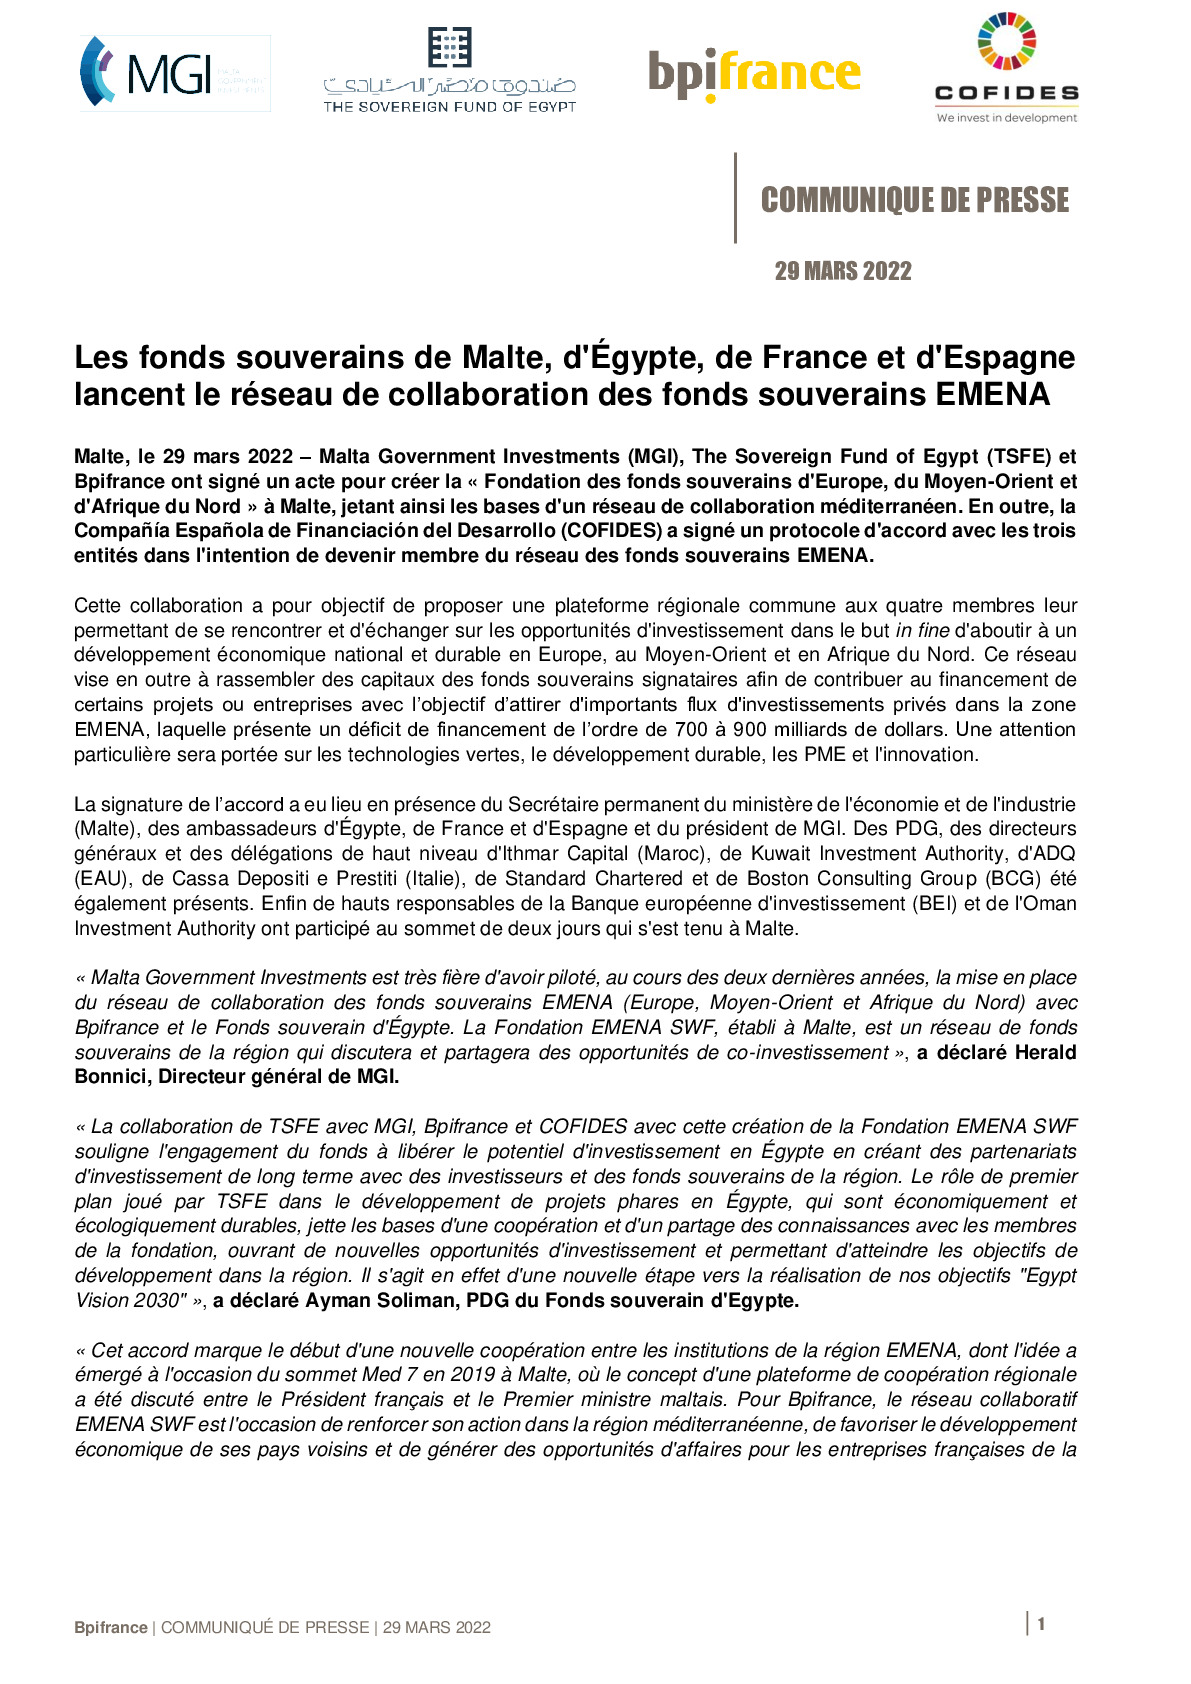 2022 03 29 – CP Les fonds souverains de Malte dEgypte de France et dEspagne lancent le reseau de collaboration des fonds souverains EMENA-pdf